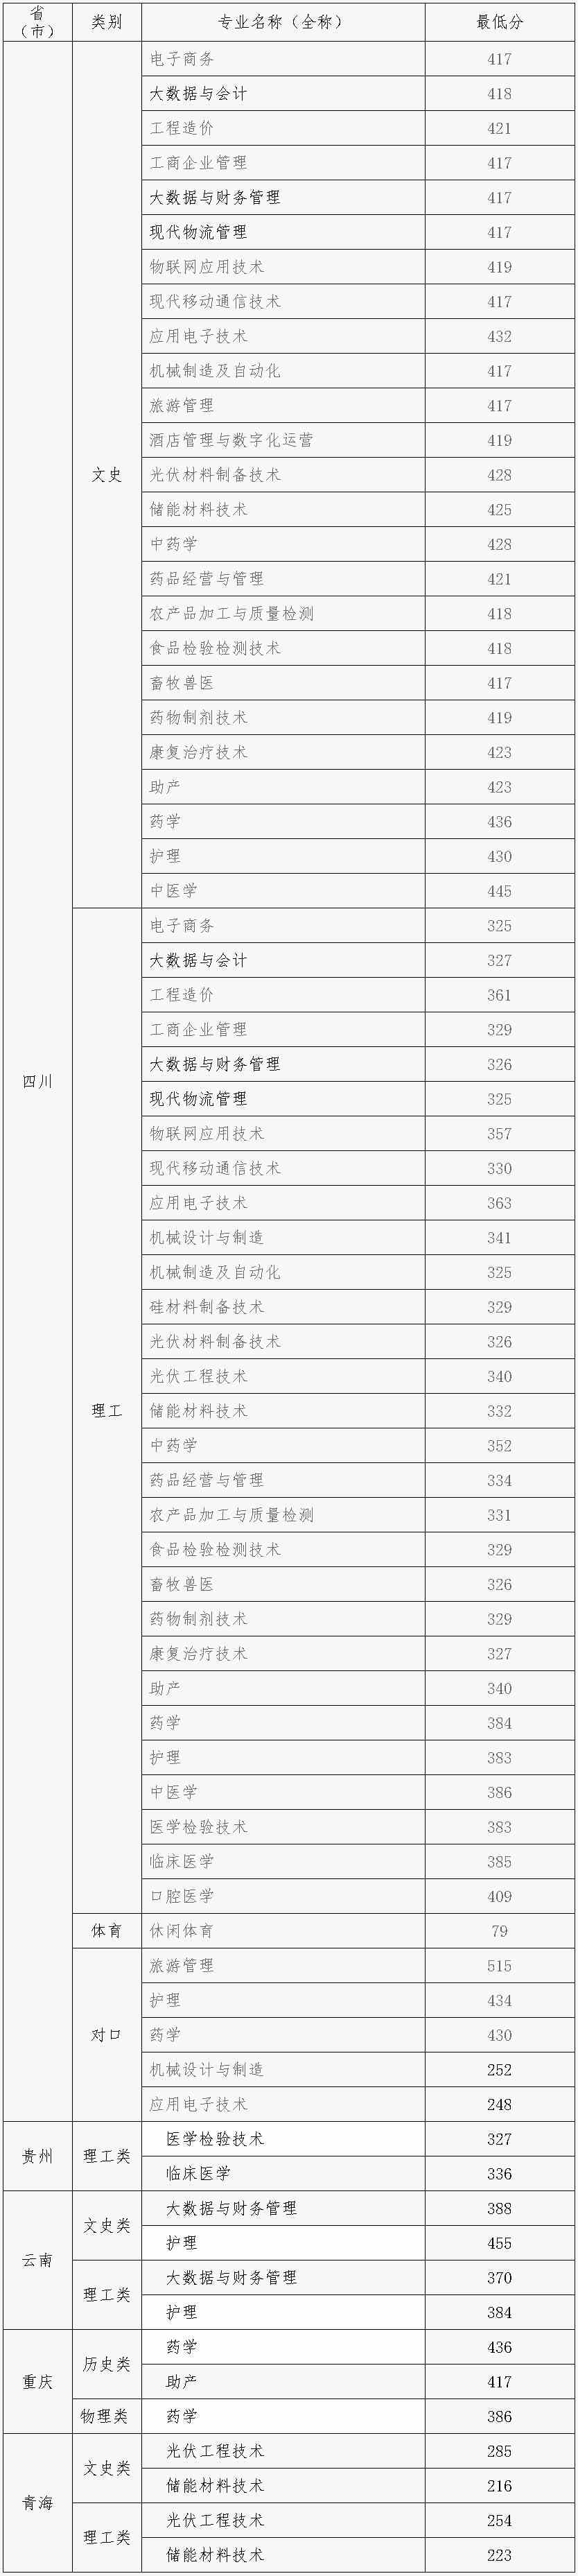 乐山职业技术学院2021年各省分专业录取分数情况.jpg